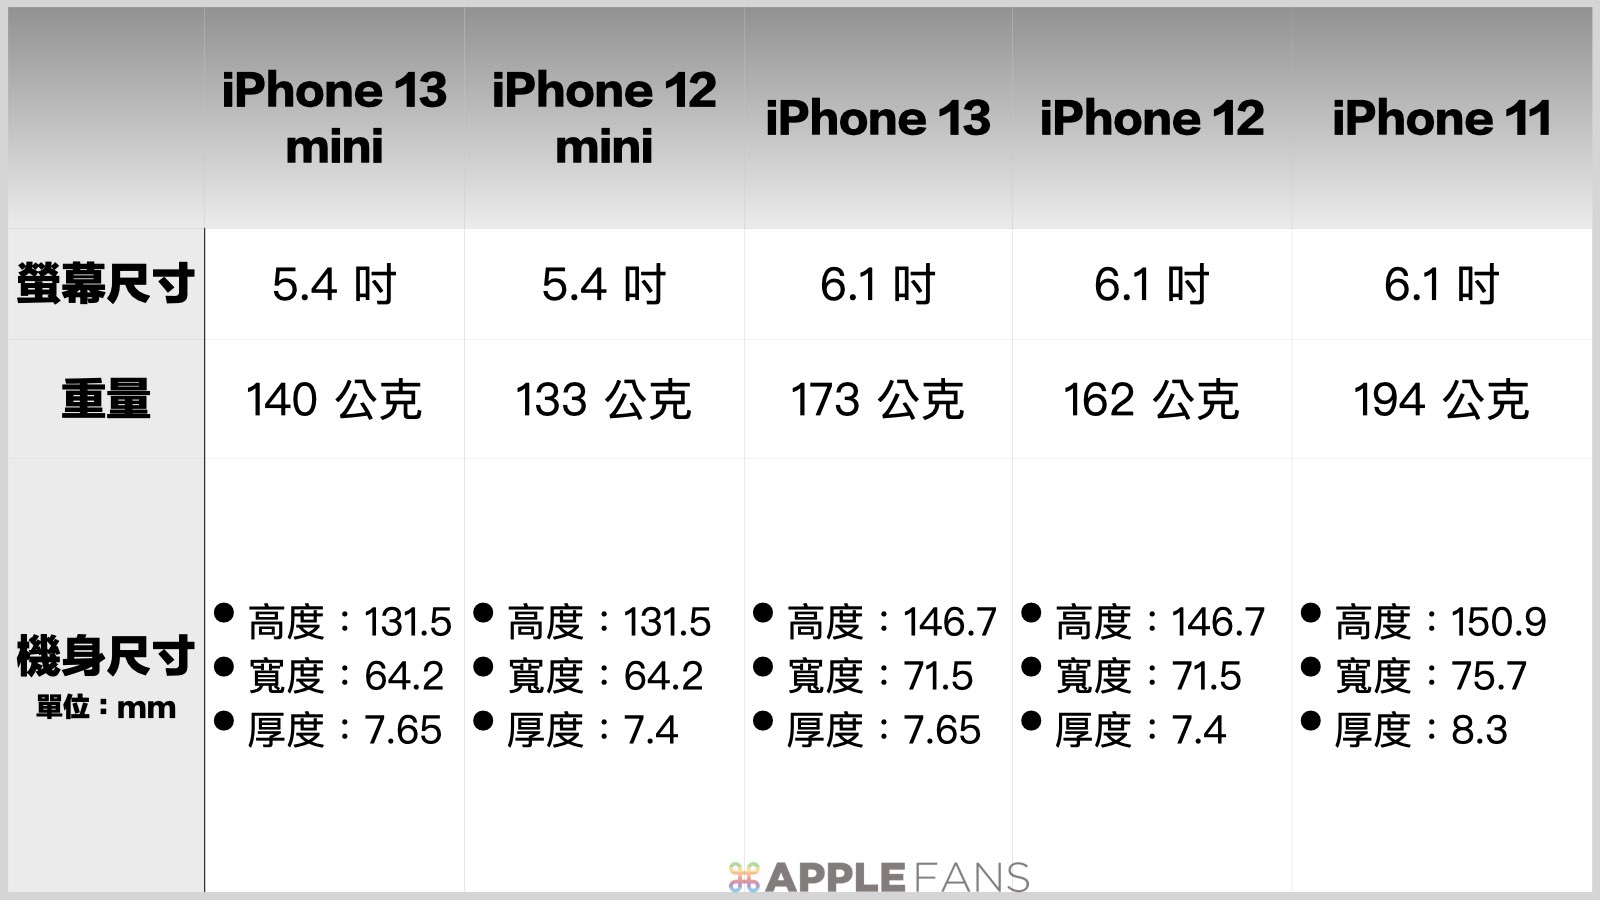 重量比一比 - iPhone 13 mini / iPhone 13 / iPhone 12 mimi / iPhone 12 / iPhone 11